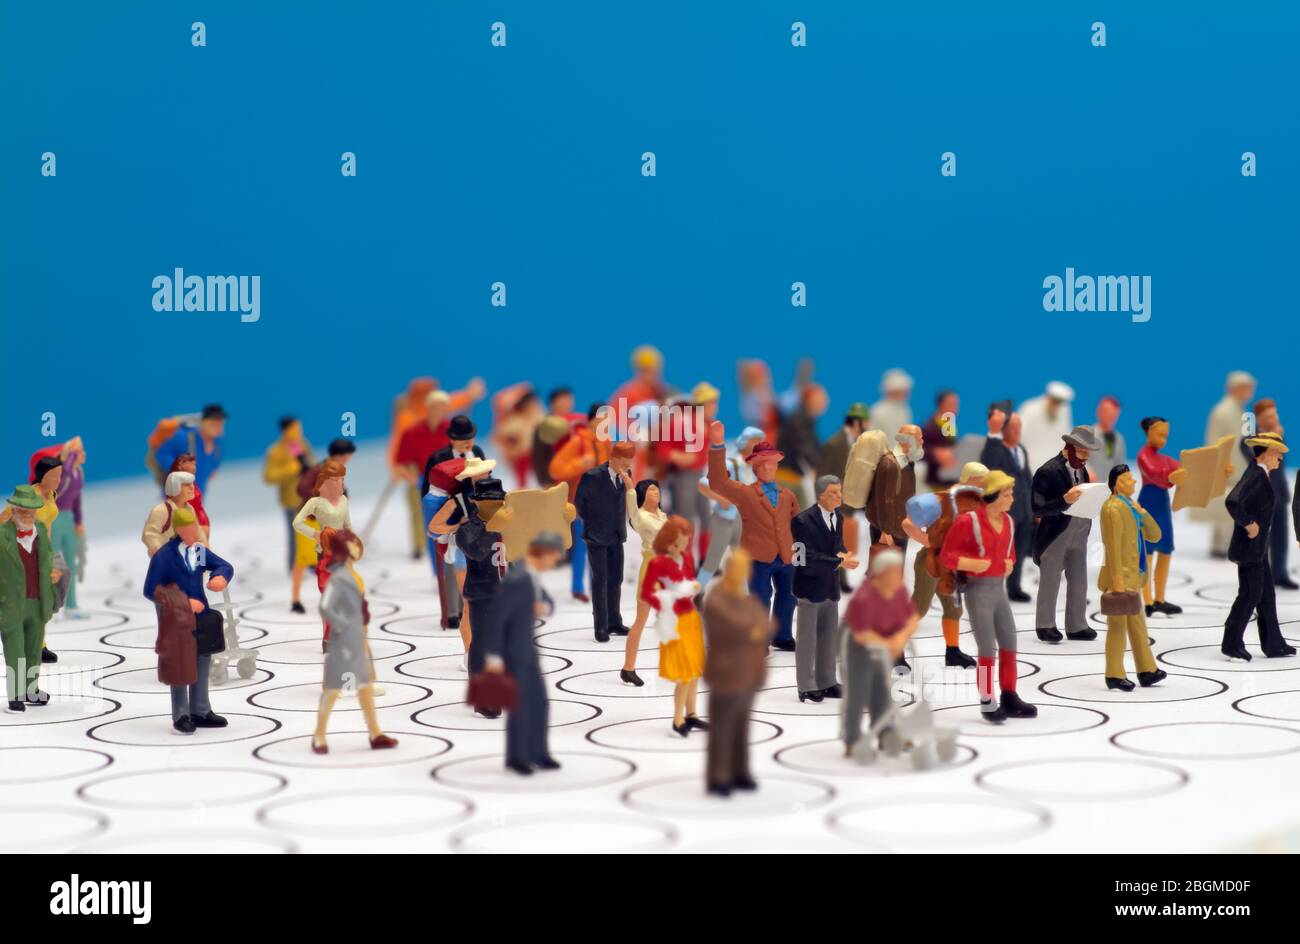 Jouets miniatures - image conceptuelle distanciation sociale, les gens se distançant dans les lieux publics pour éviter l'infection. Banque D'Images